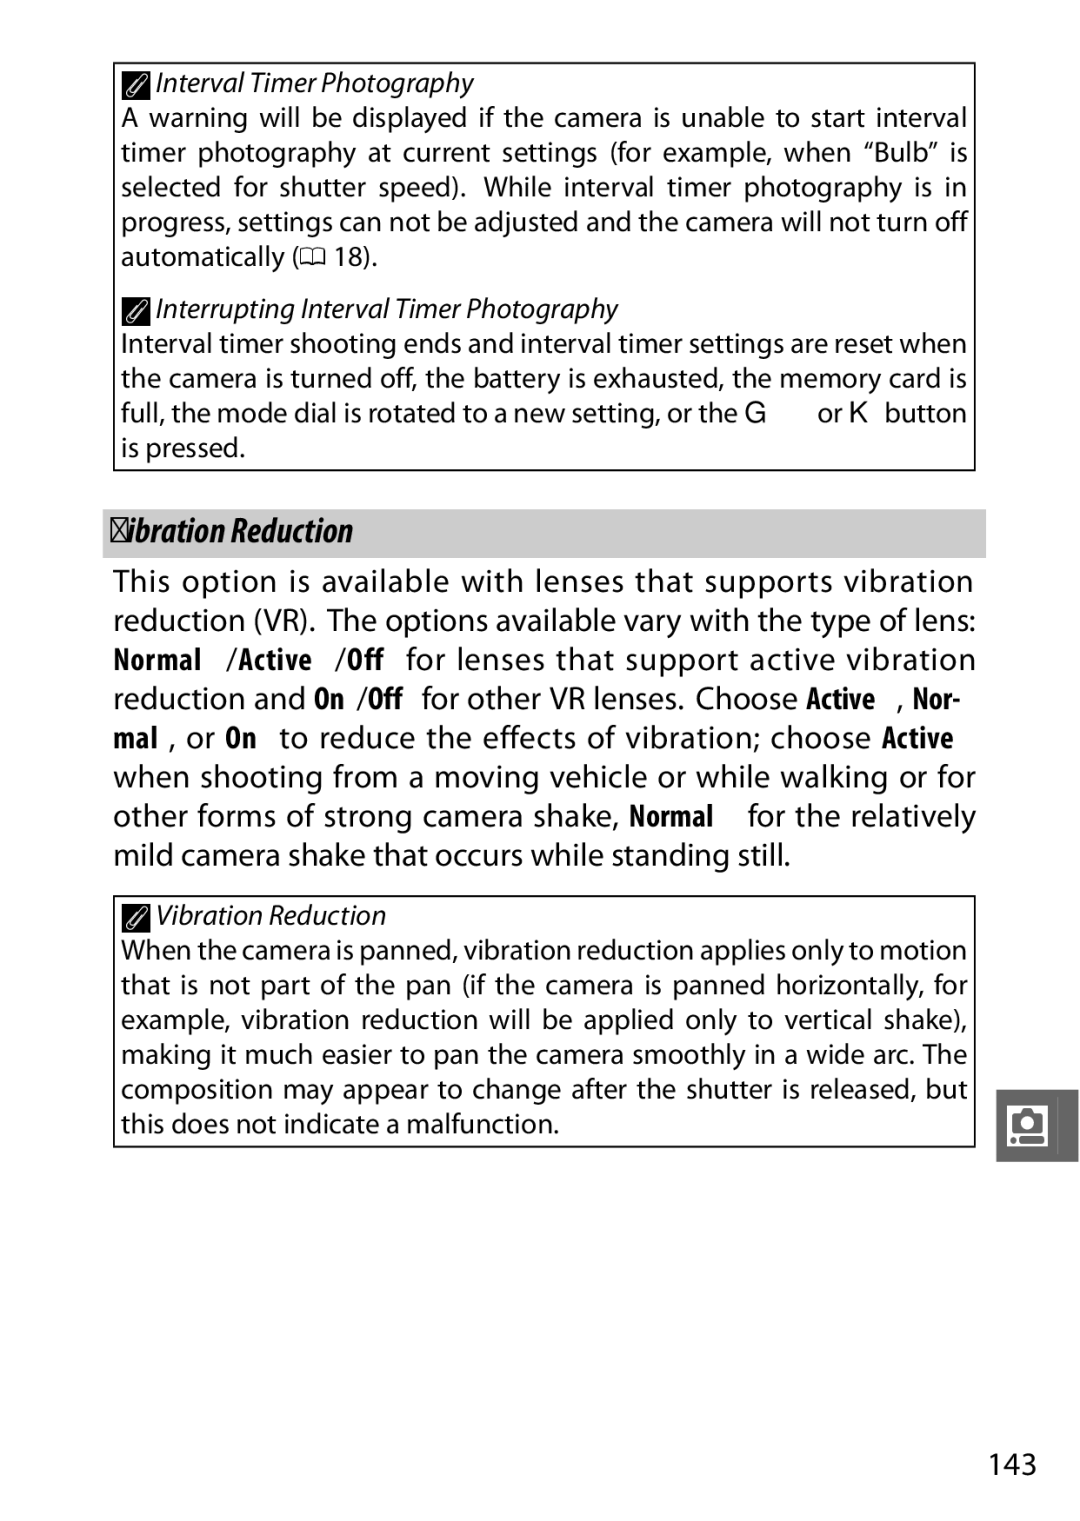 Nikon V1 manual 143, AVibration Reduction 